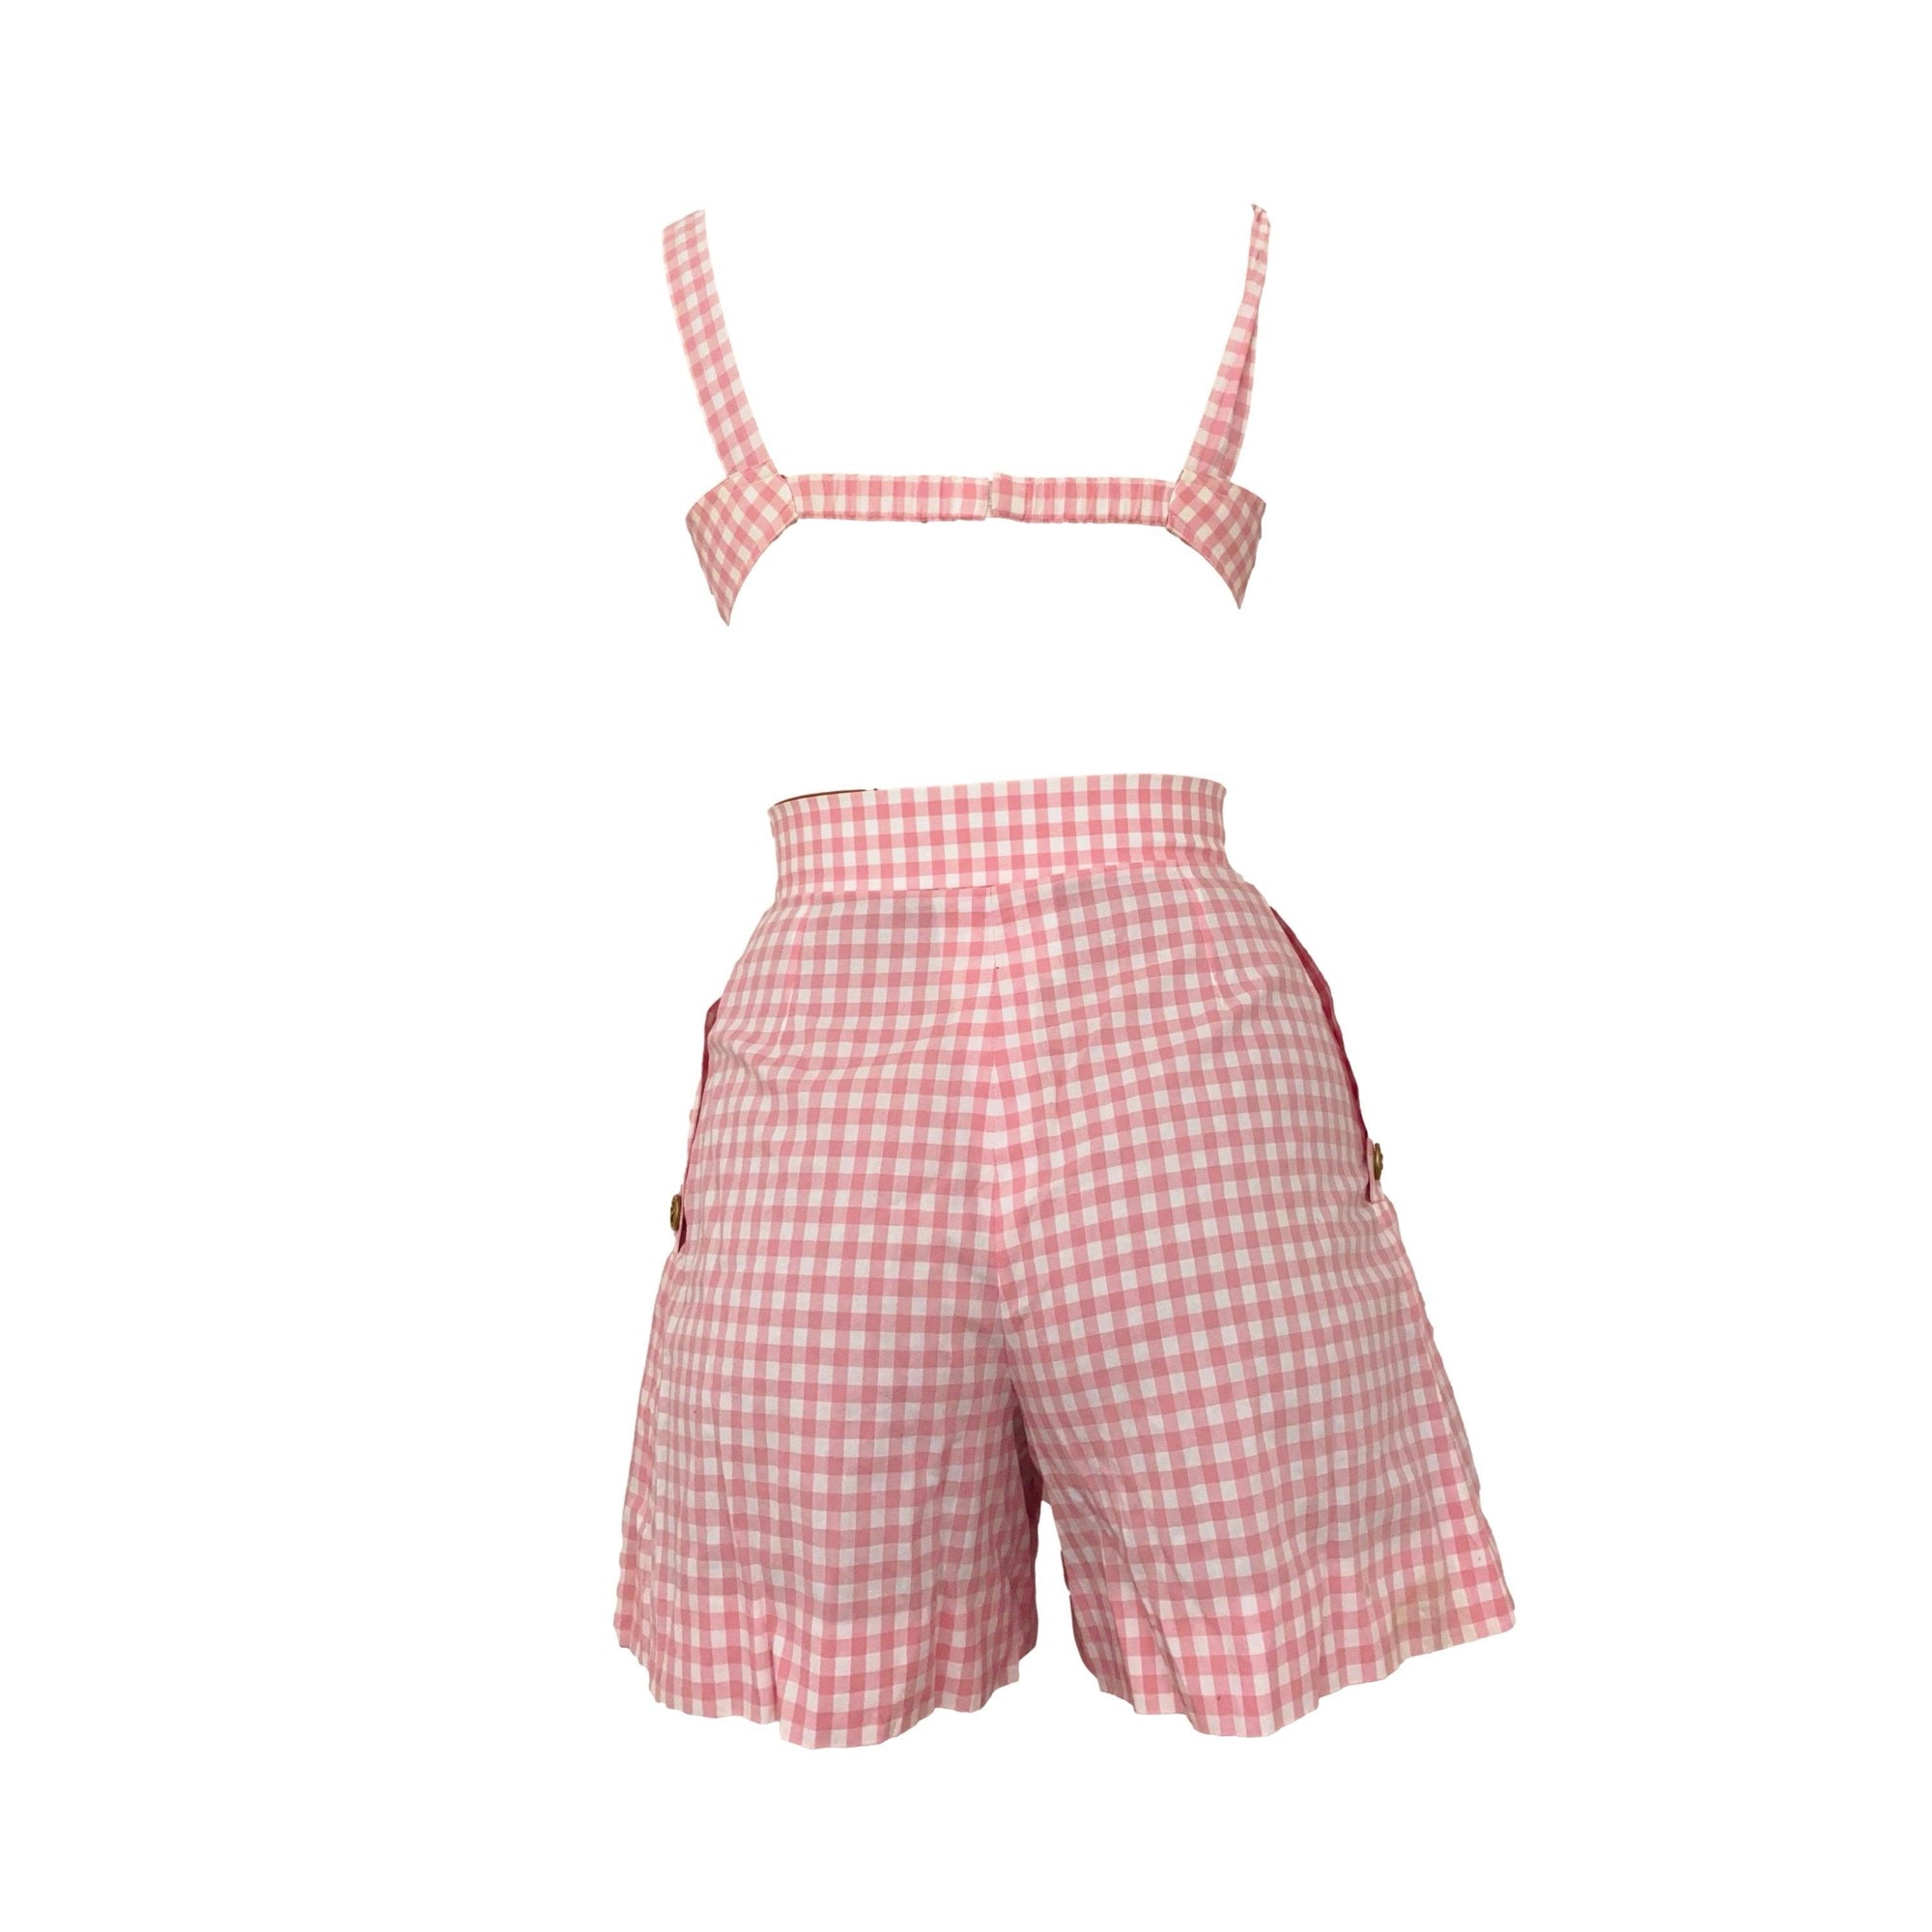 Chanel Pink Gingham Short Set - Apparel